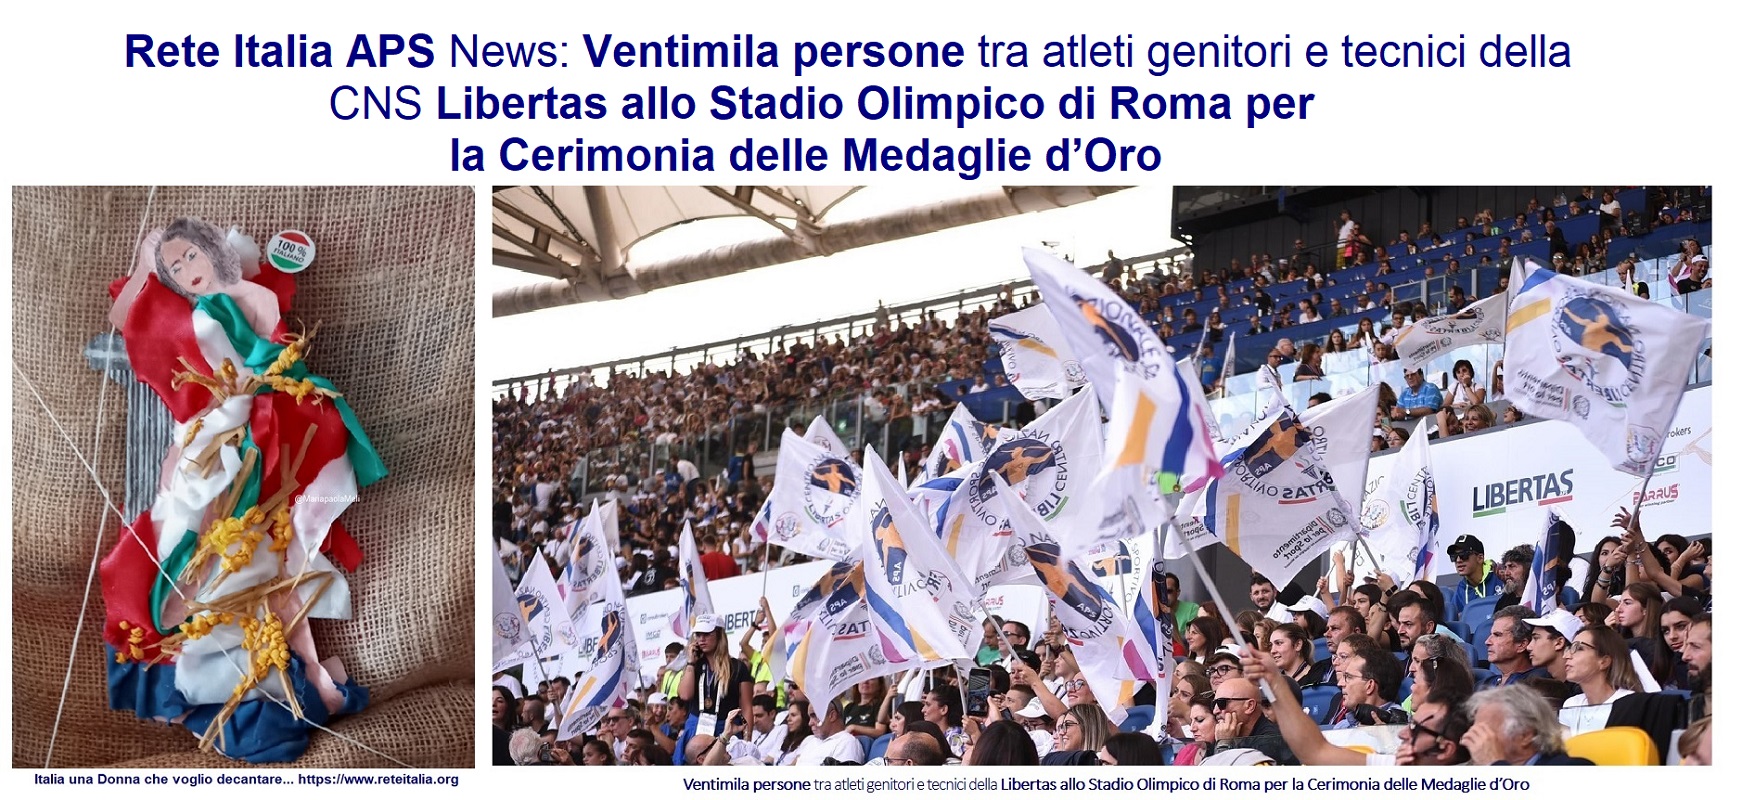 Rete Italia APS News Ventimila persone tra atleti genitori e tecnici della Libertas allo Stadio Olimpico di Roma per la Cerimonia delle Medaglie d’Oro